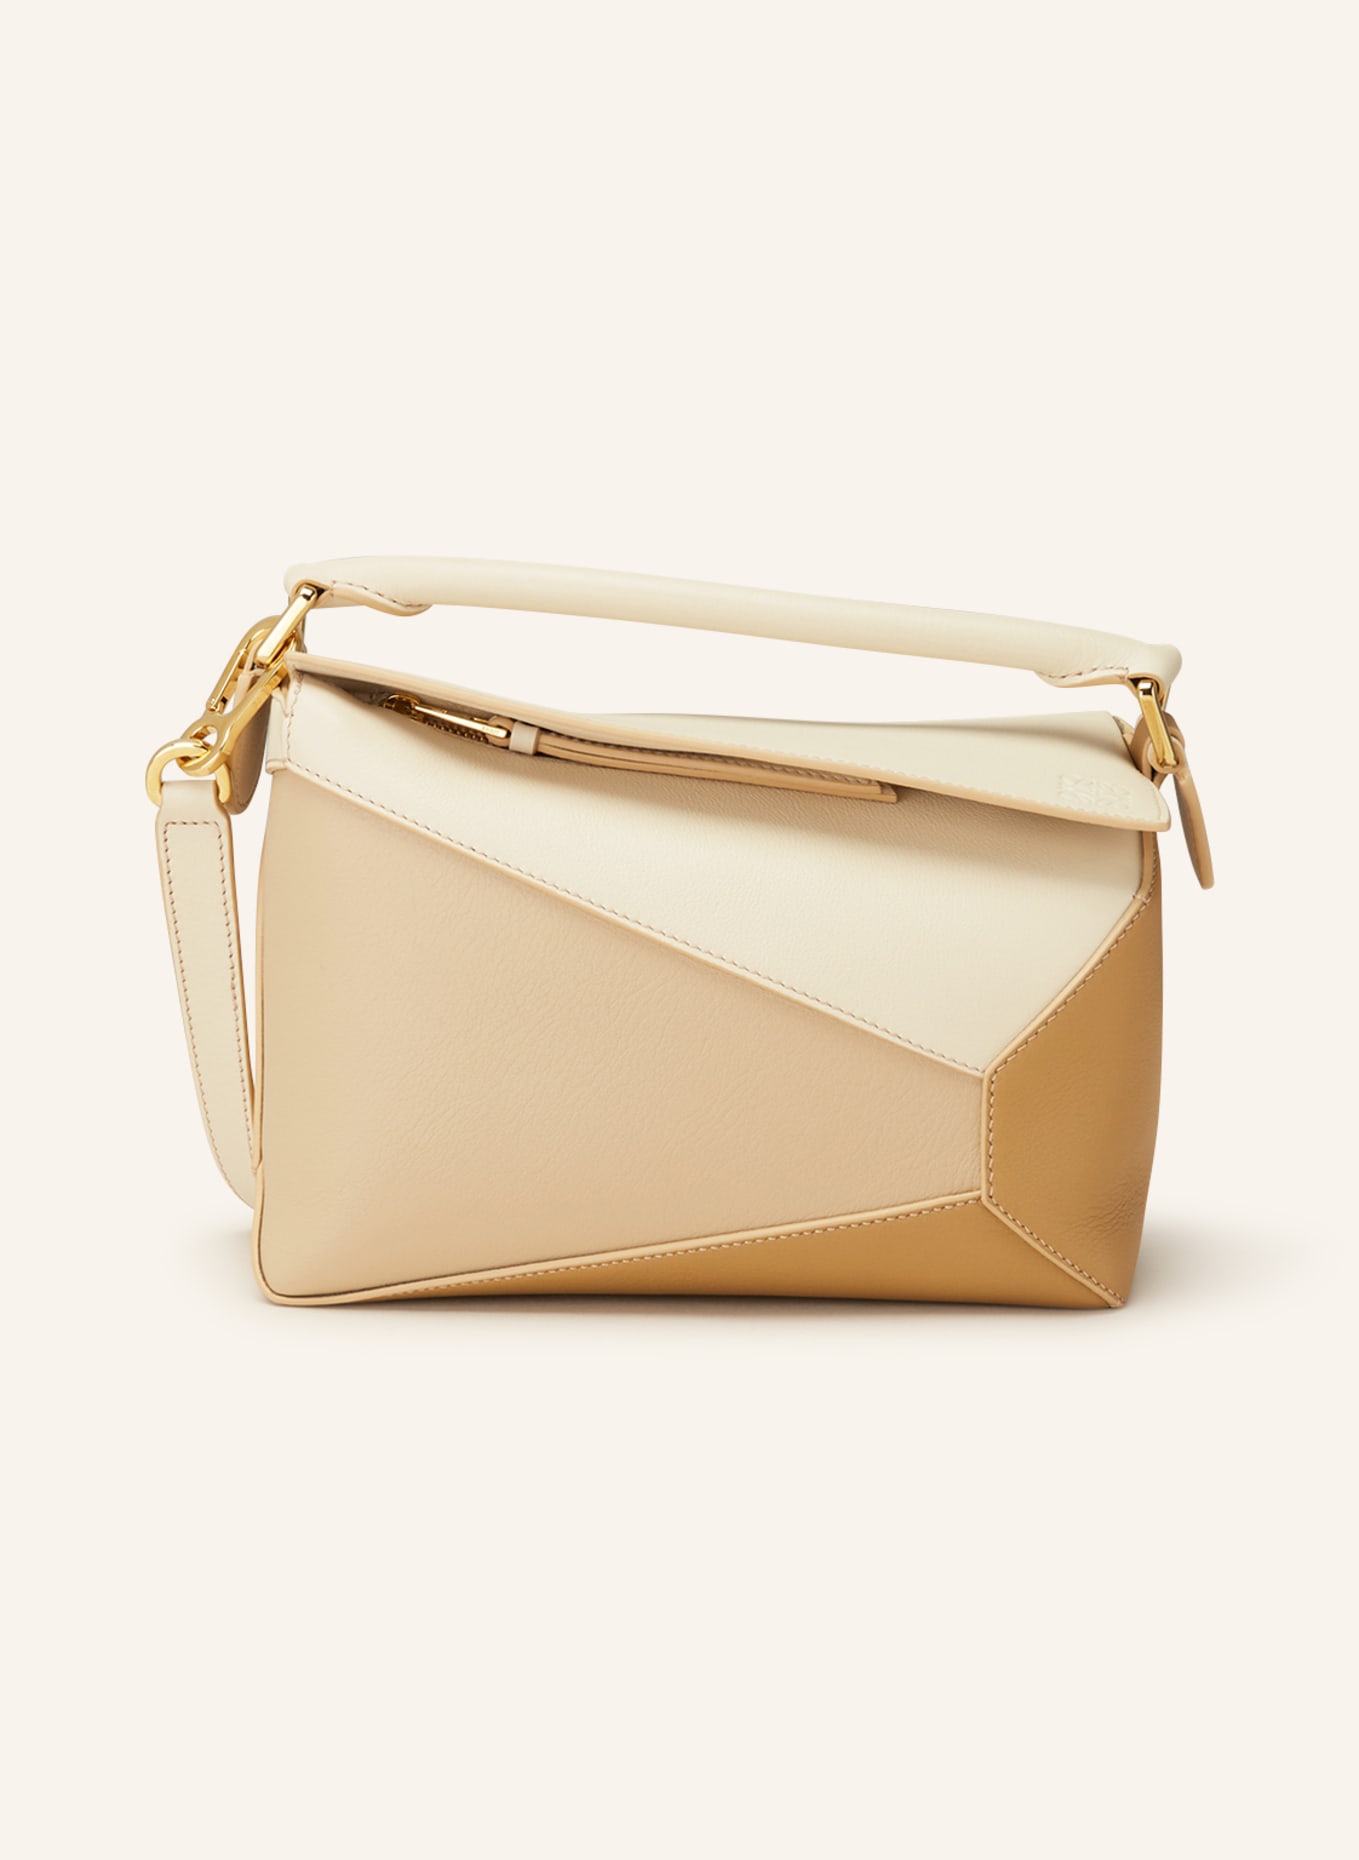 LOEWE Handtasche PUZZLE SMALL, Farbe: BEIGE/ GOLD (Bild 1)